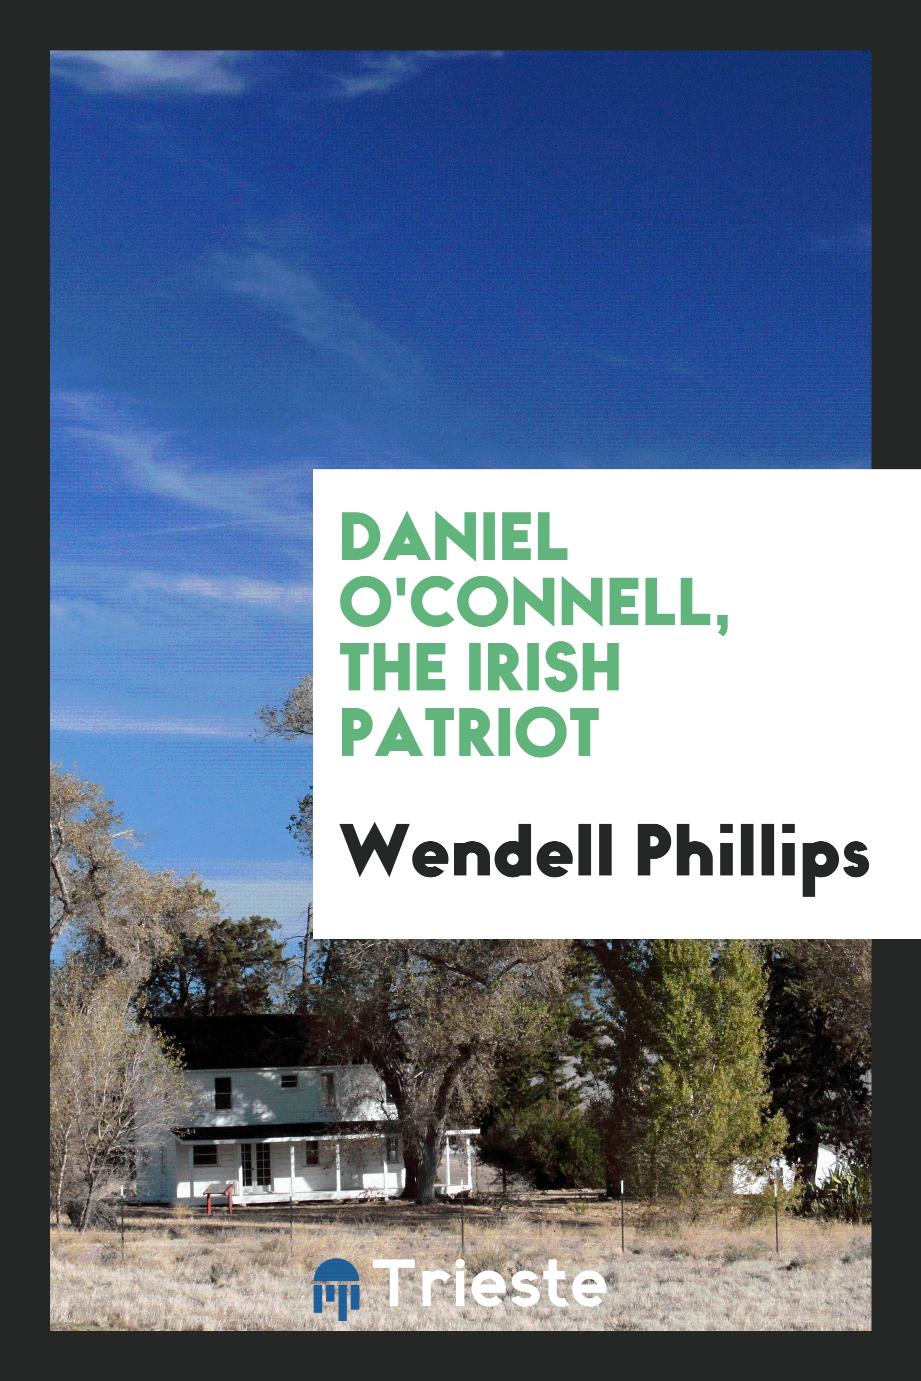 Daniel O'Connell, the Irish patriot